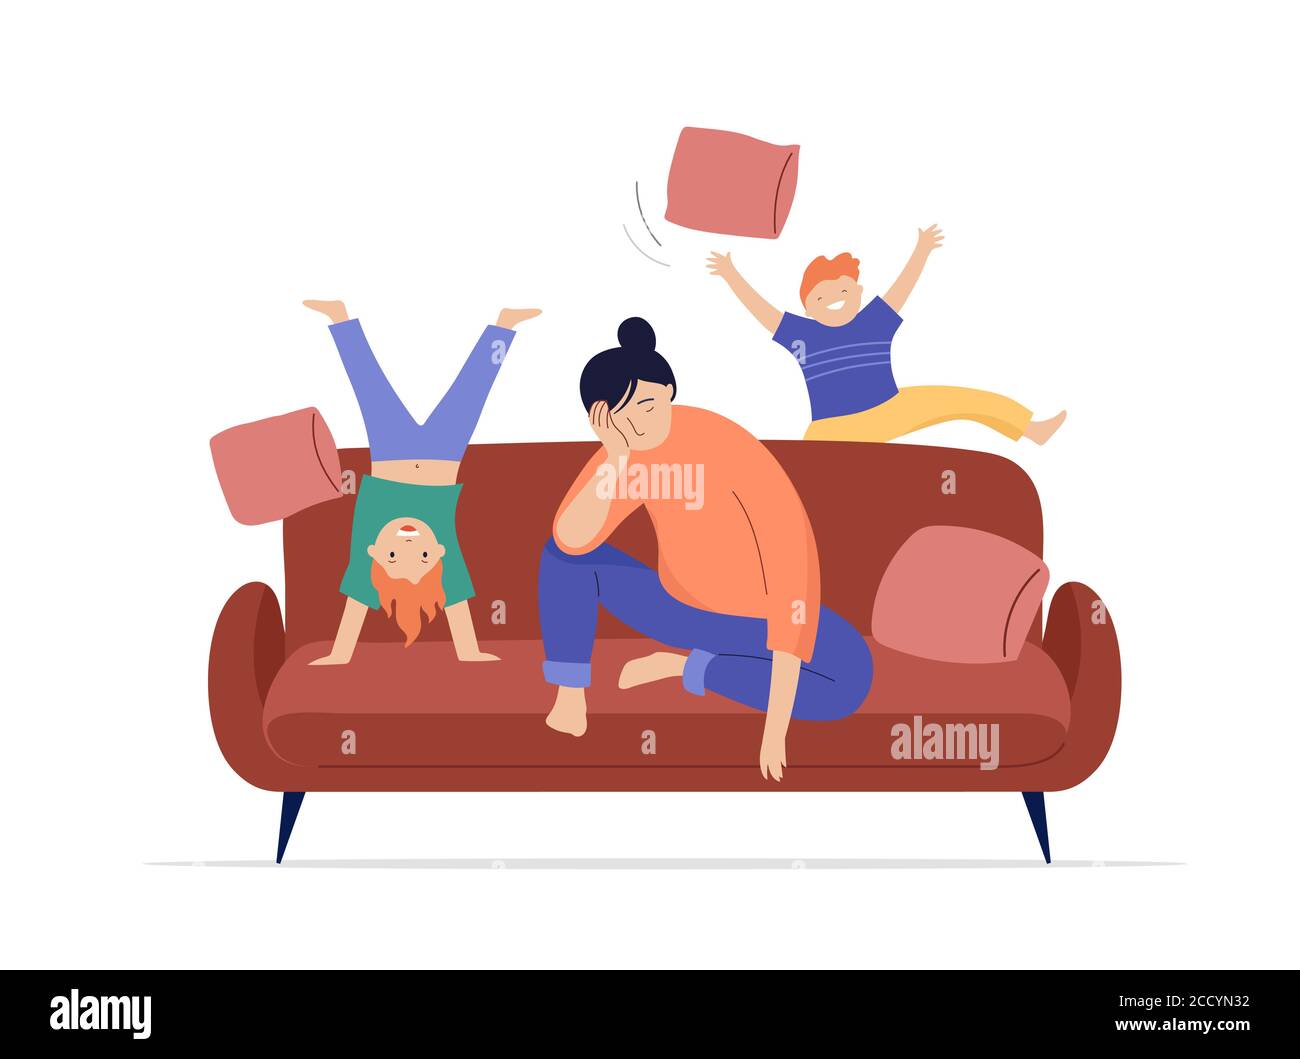 Une mère fatiguée est assise sur un canapé, les enfants jouent, sautent et courent autour d'elle Illustration de Vecteur